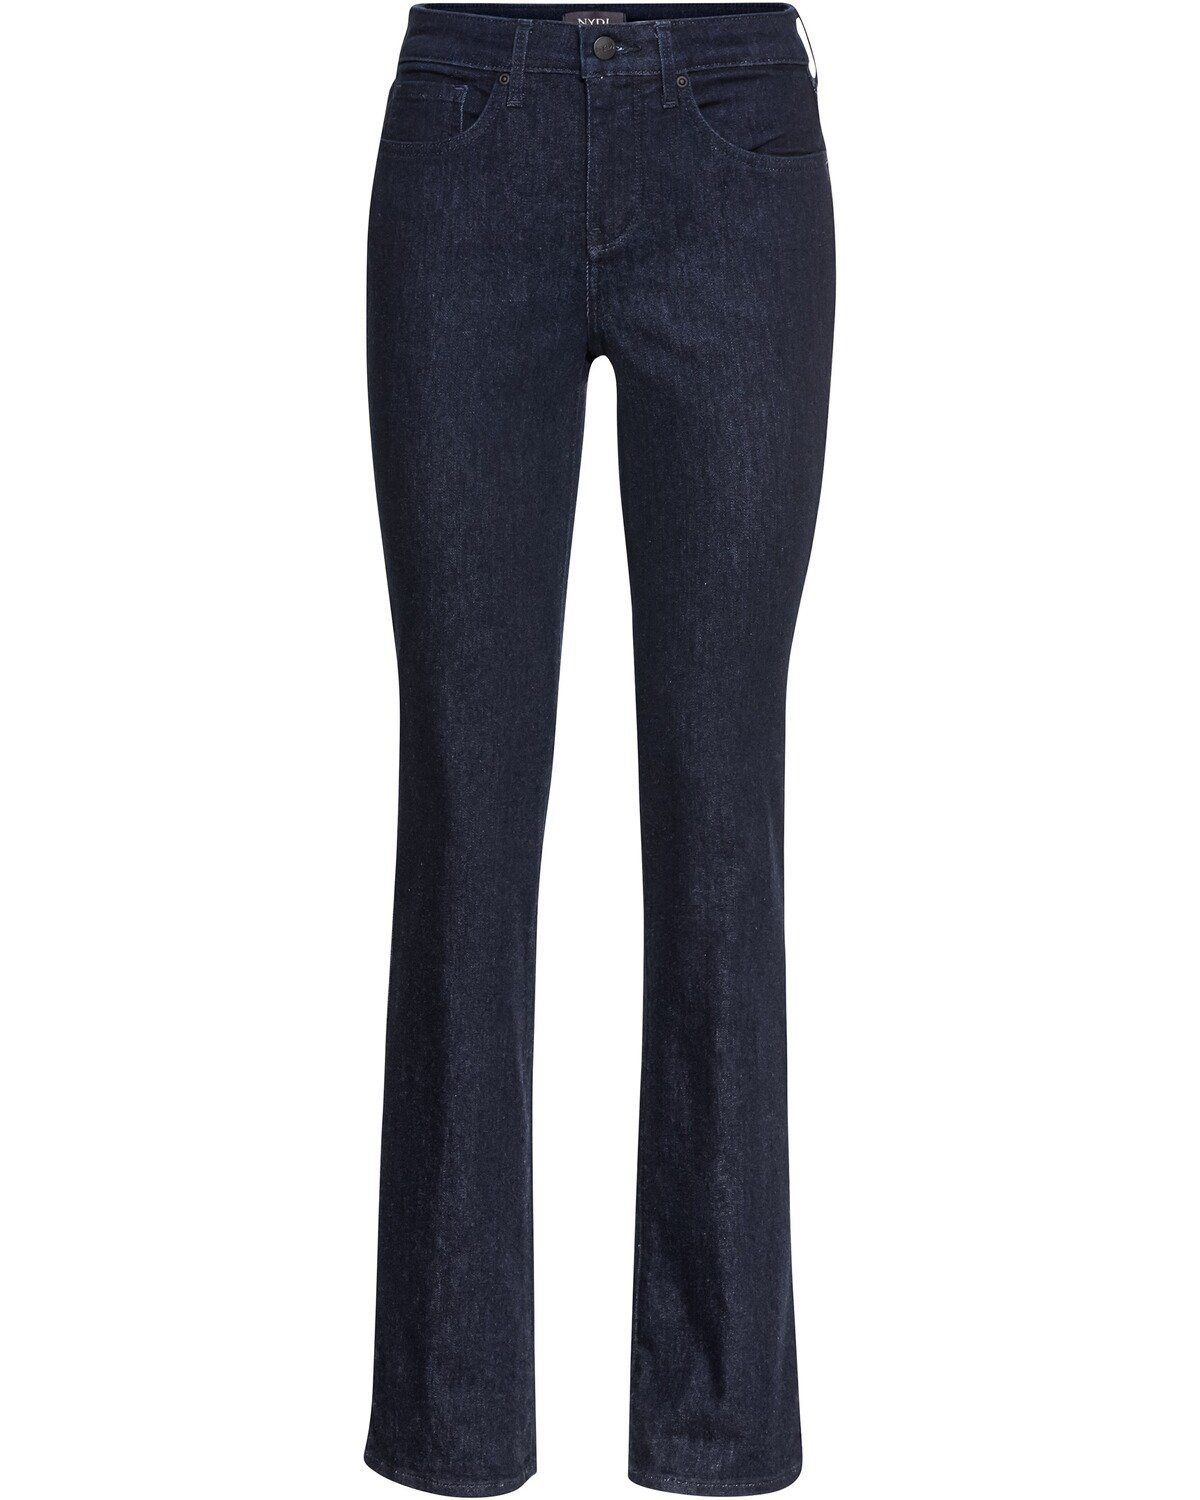 NYDJ Jeans online kaufen | OTTO